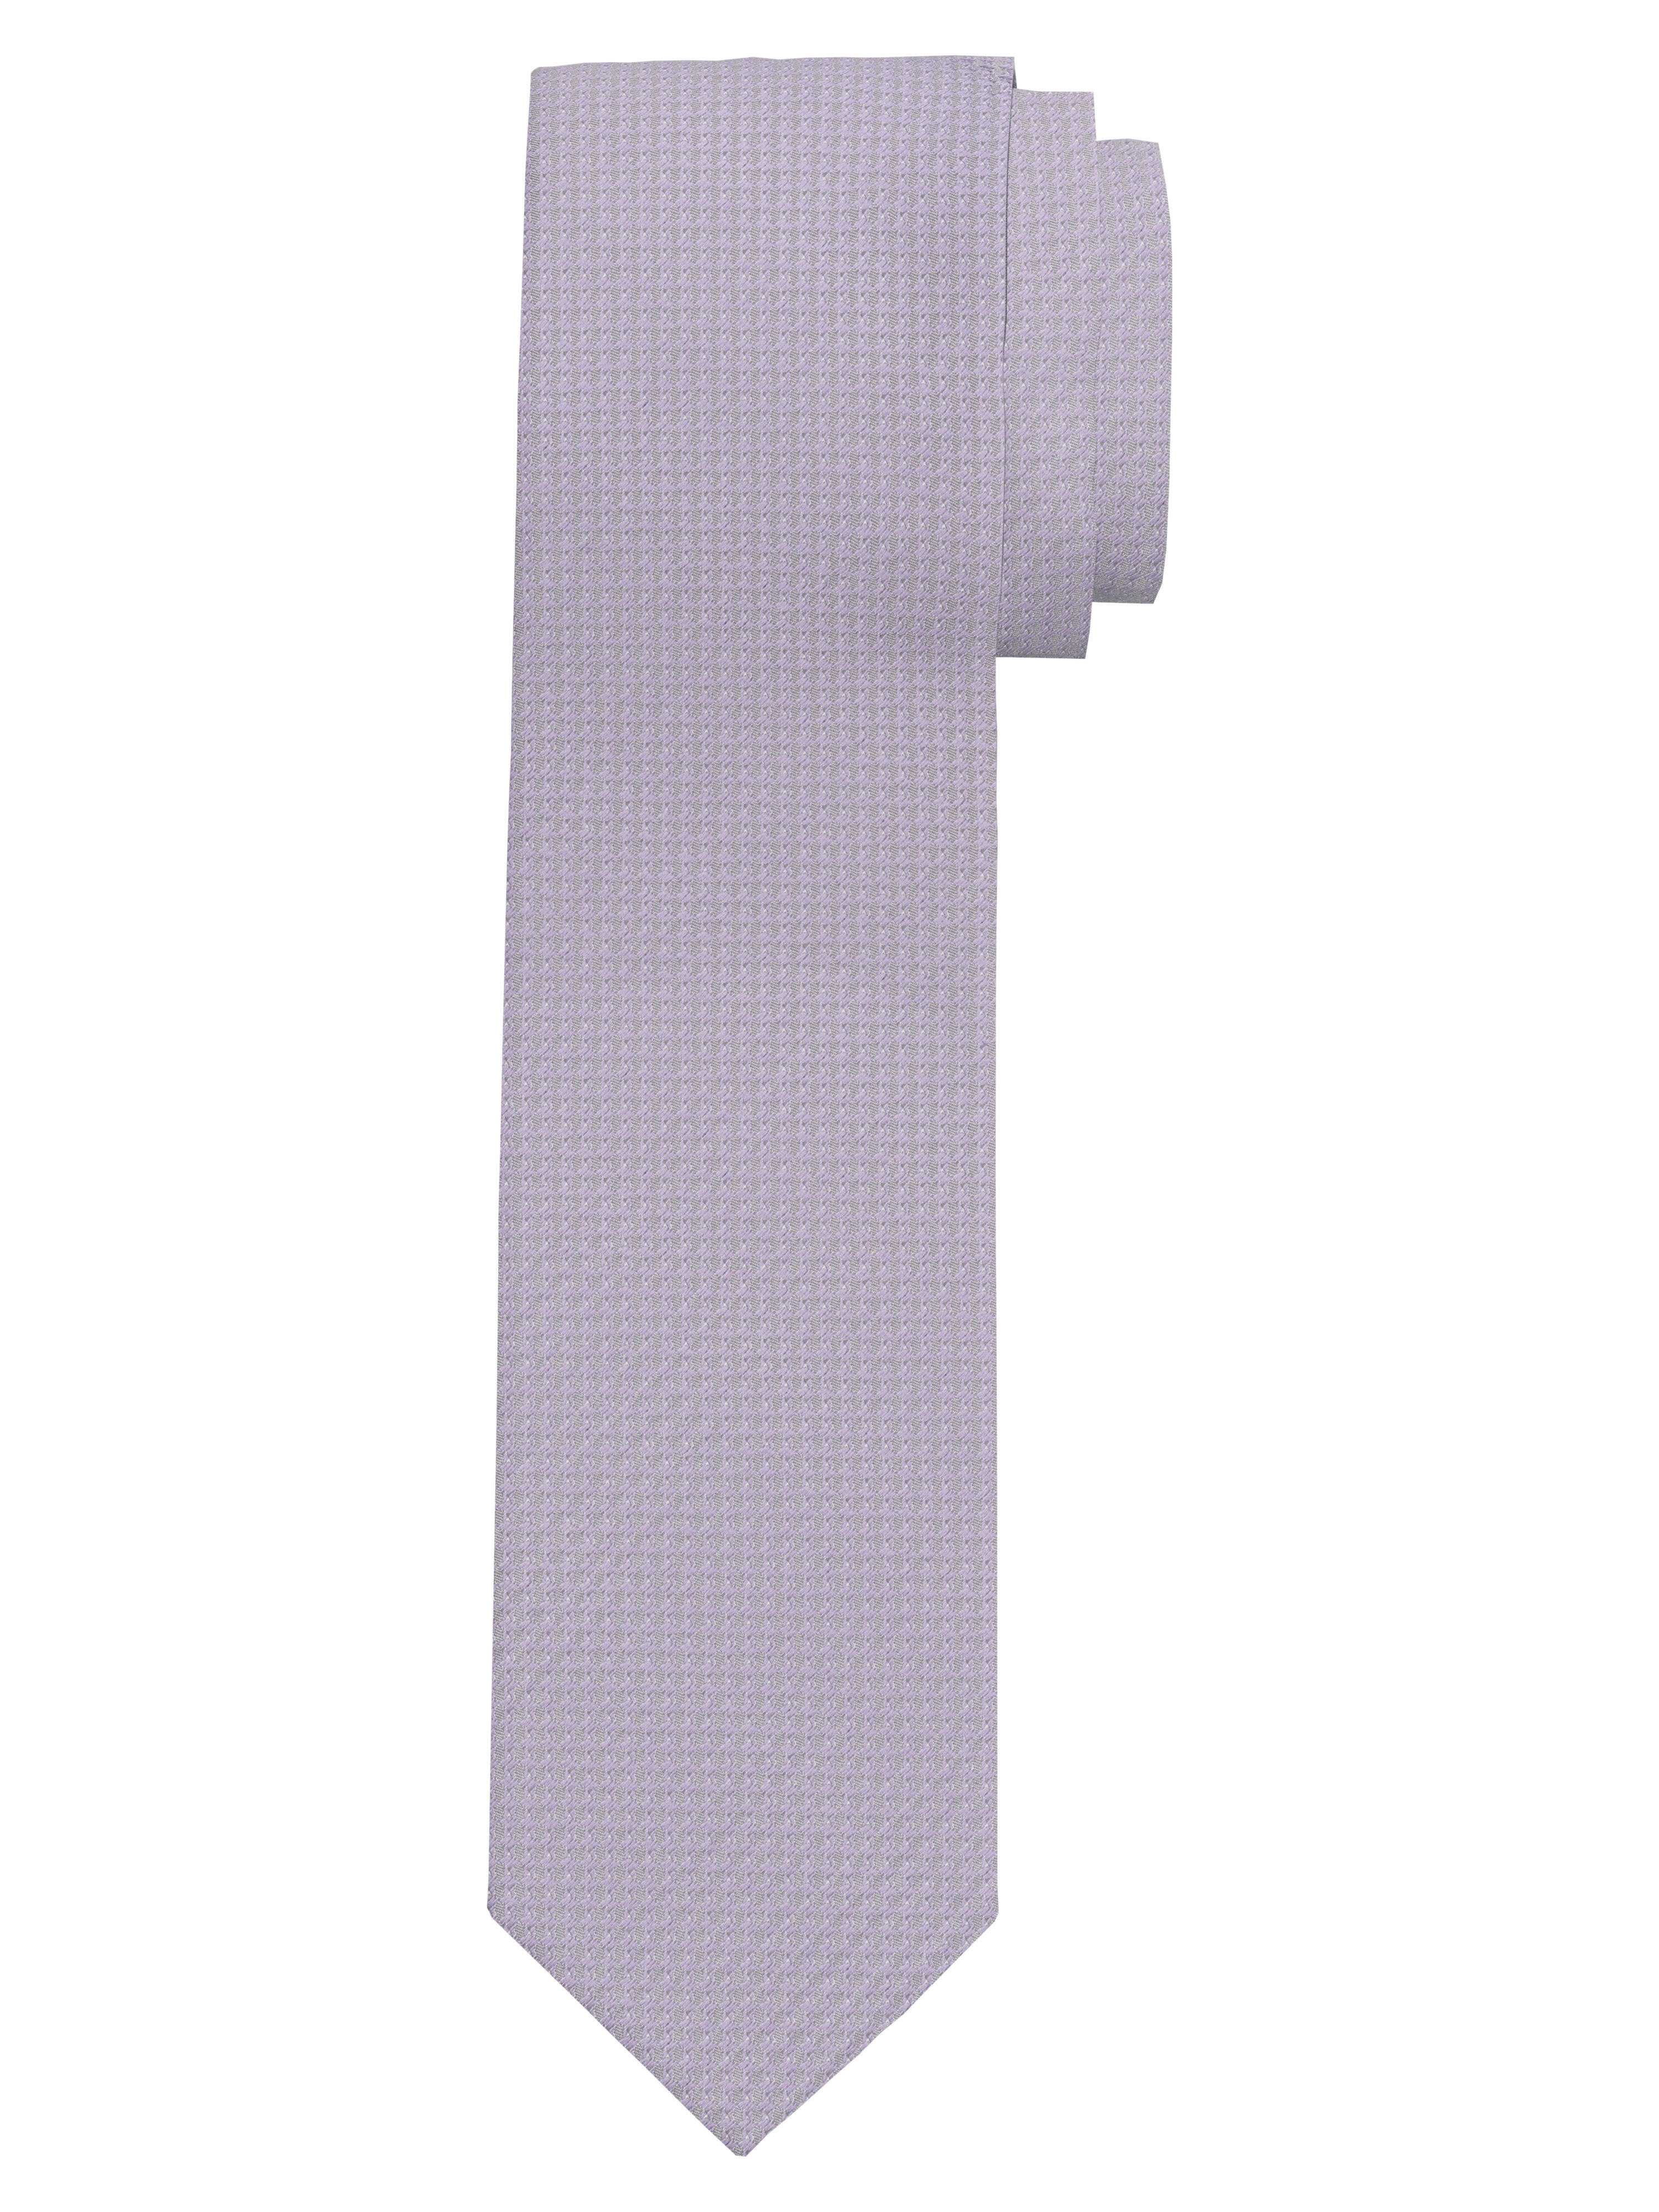 OLYMP Krawatte, slim 6,5 cm | Flieder - 1782009201